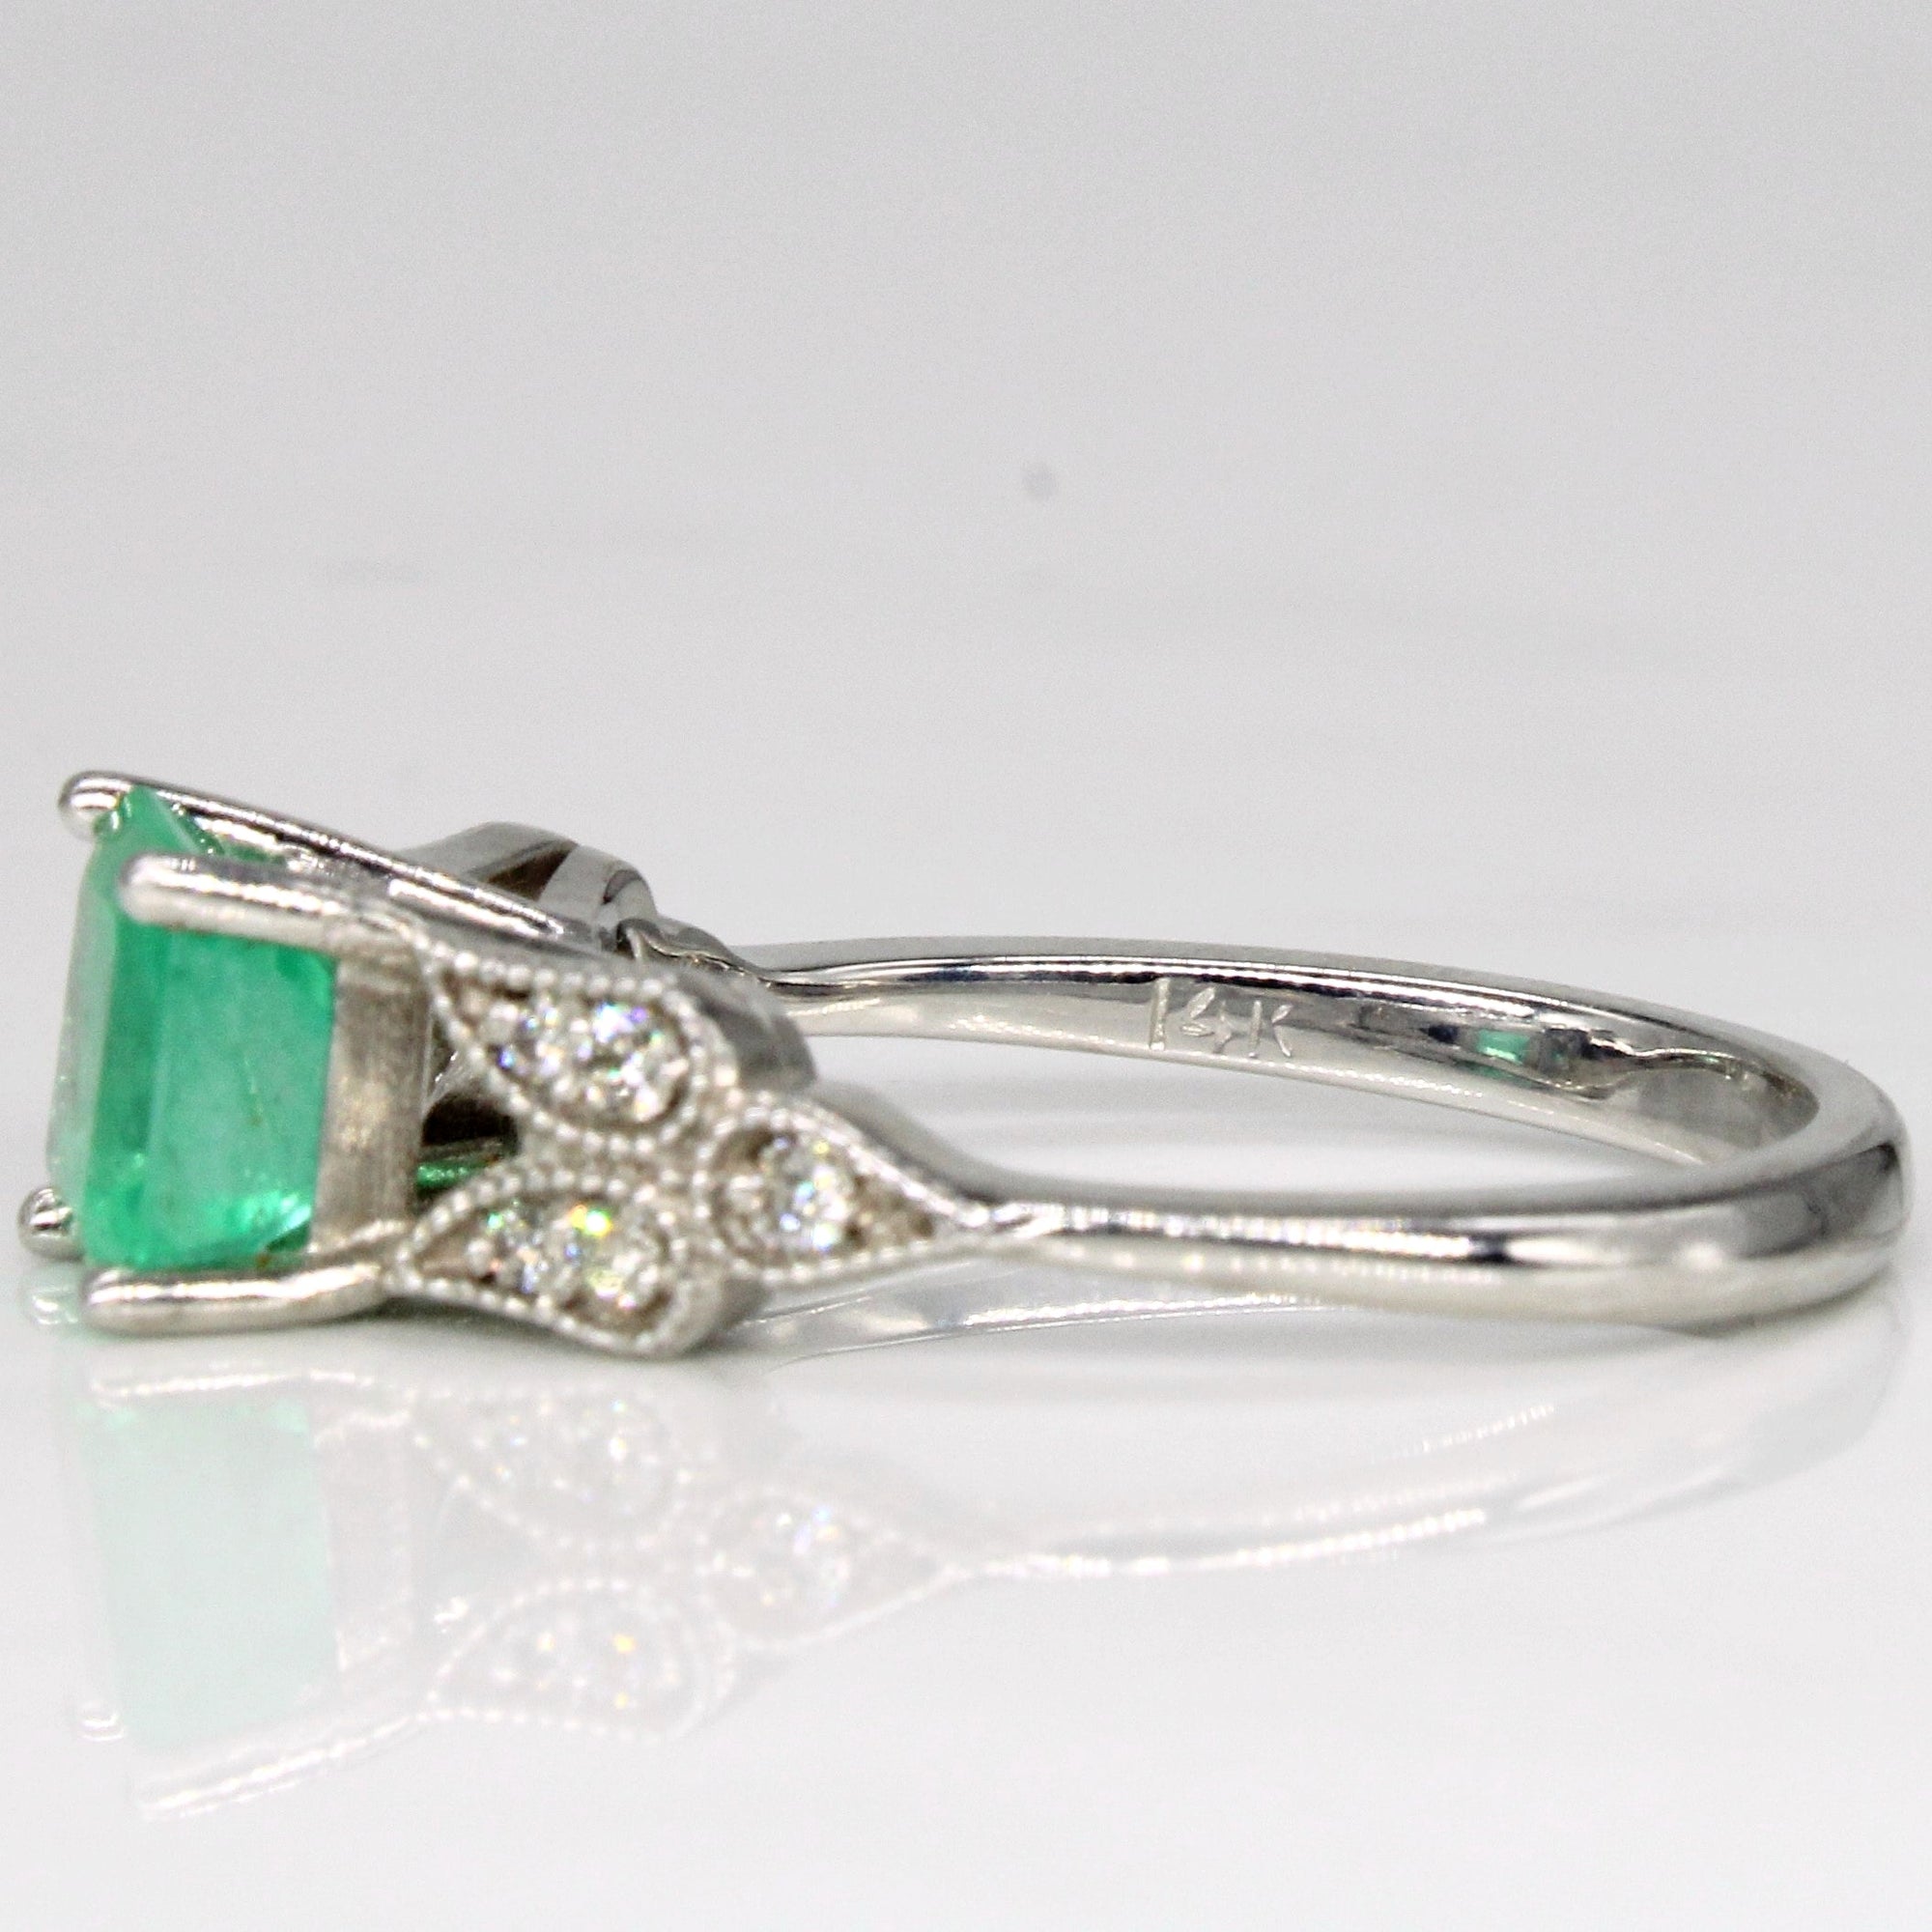 Emerald & Diamond Ring | 1.26ct, 0.14ctw | SZ 6.75 |